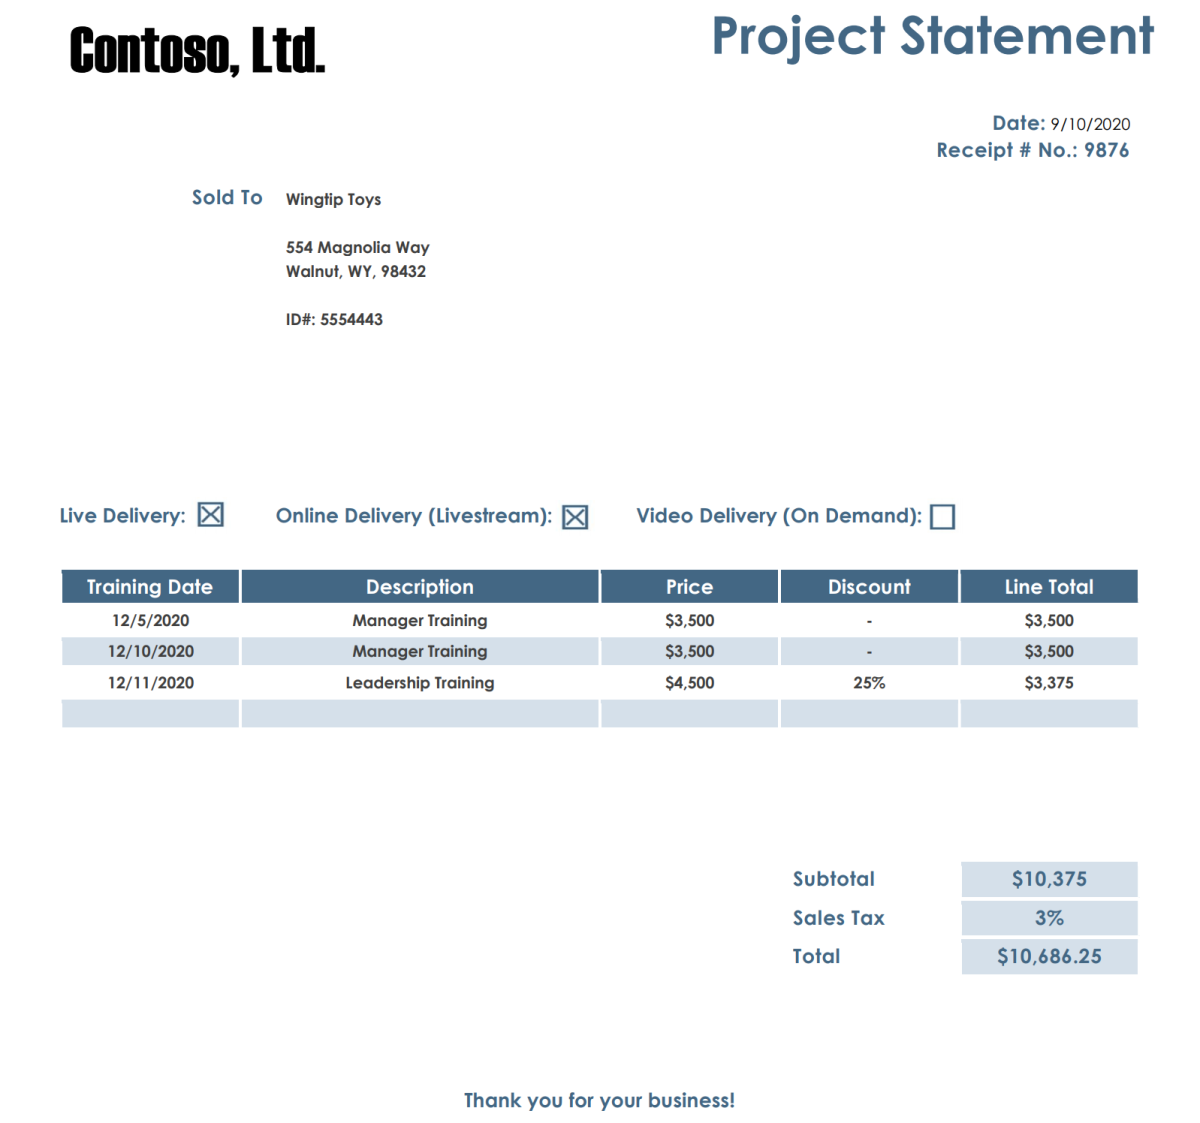 Fotografia do documento de declaração do projeto Contoso com uma tabela.